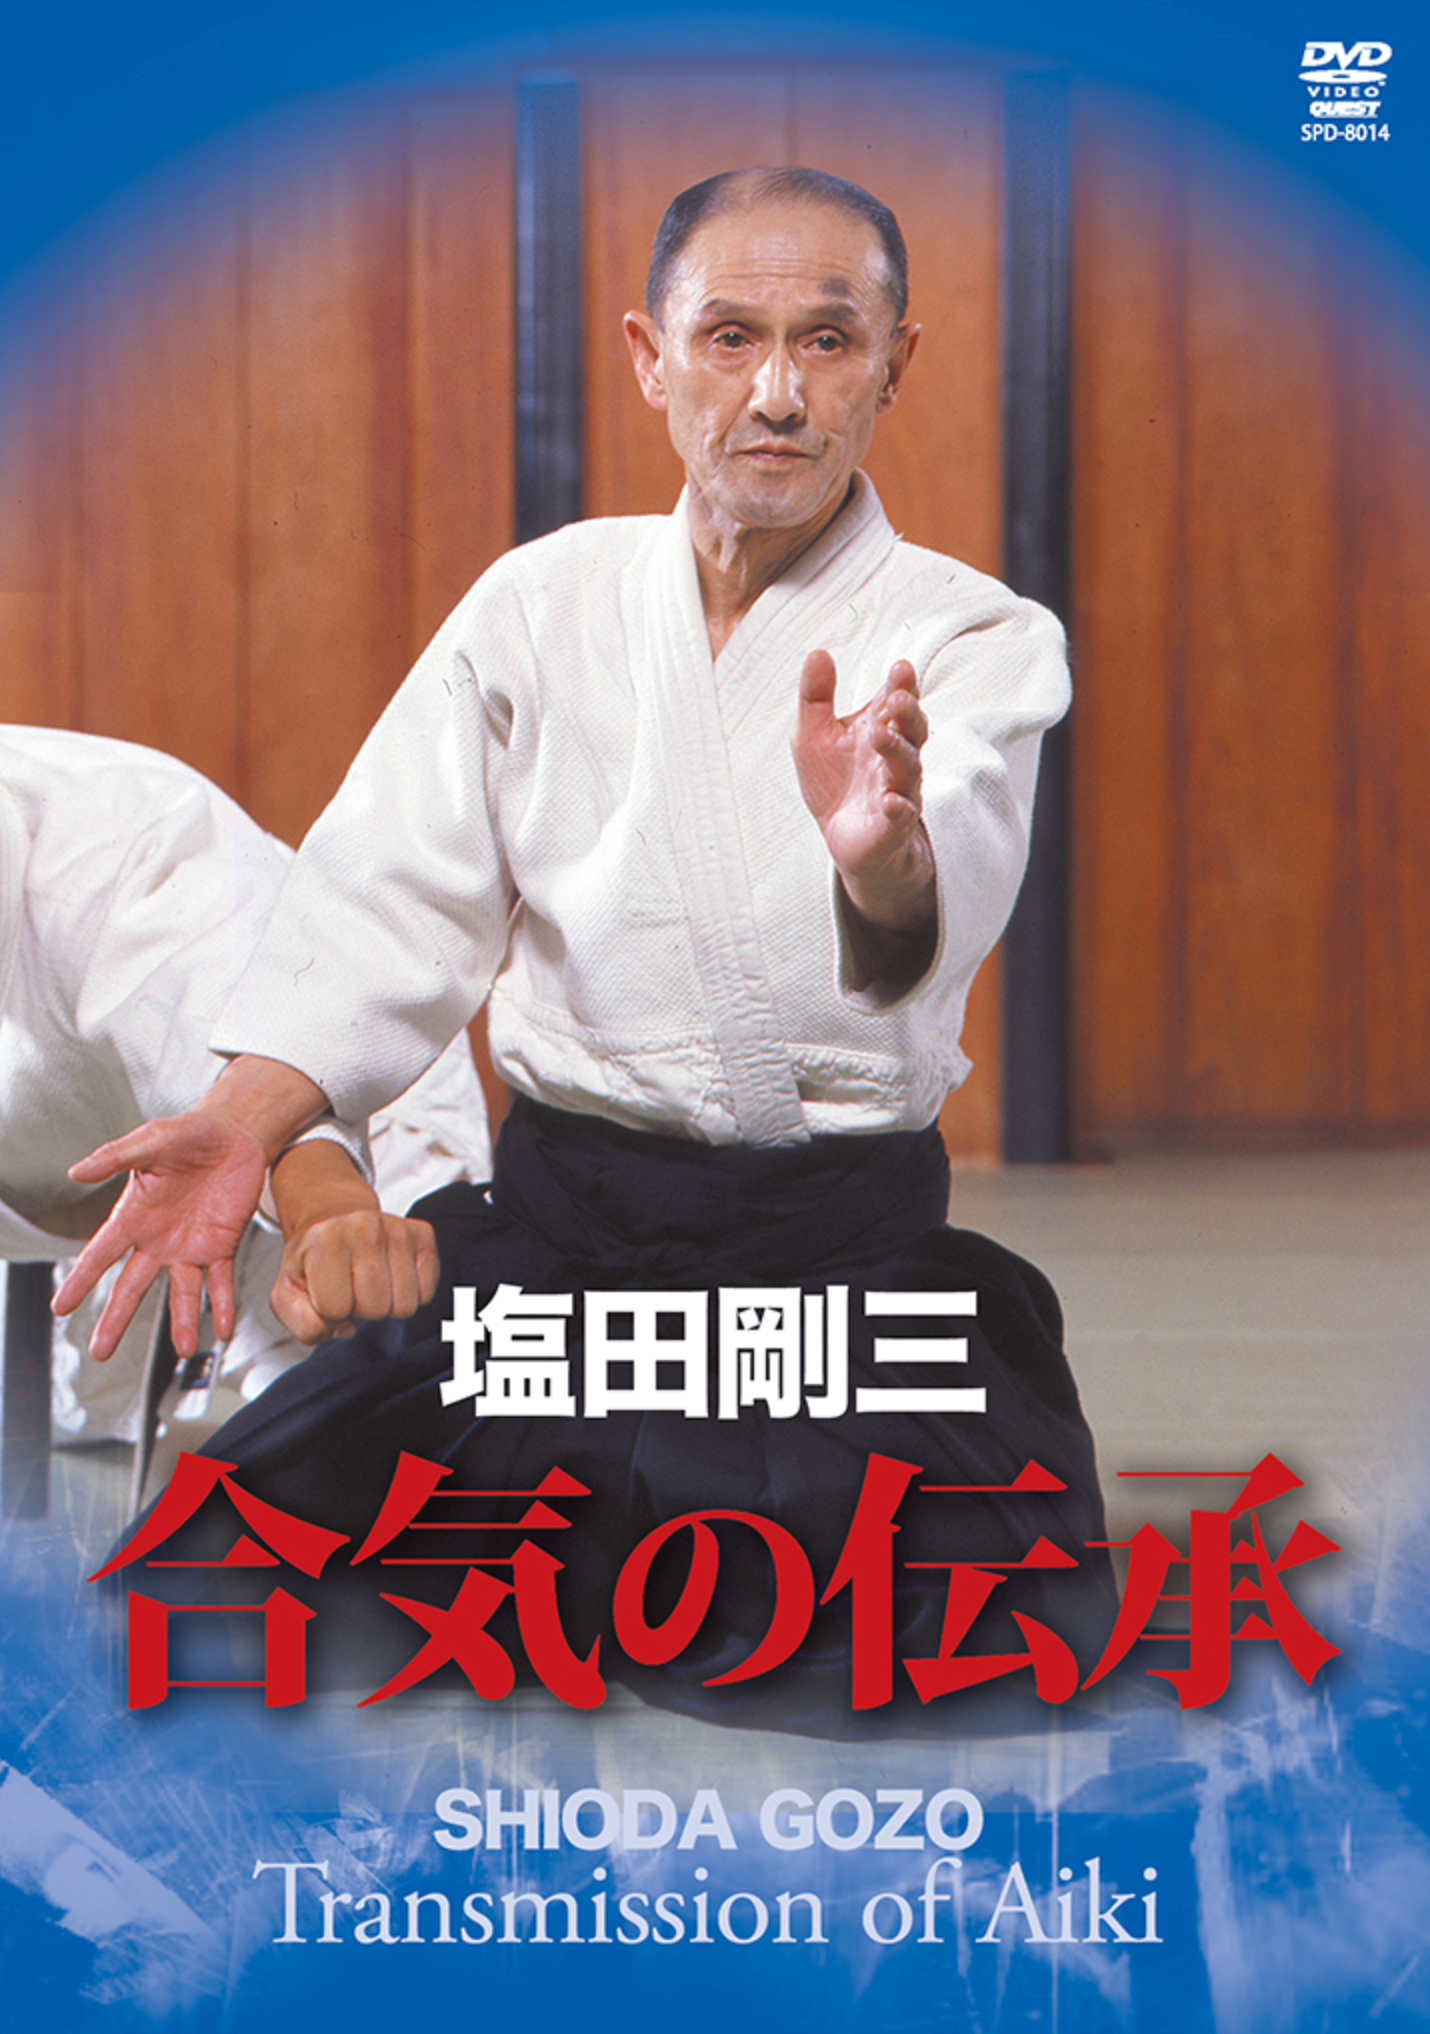 Transmission of Aiki DVD by Gozo Shioda - Budovideos Inc